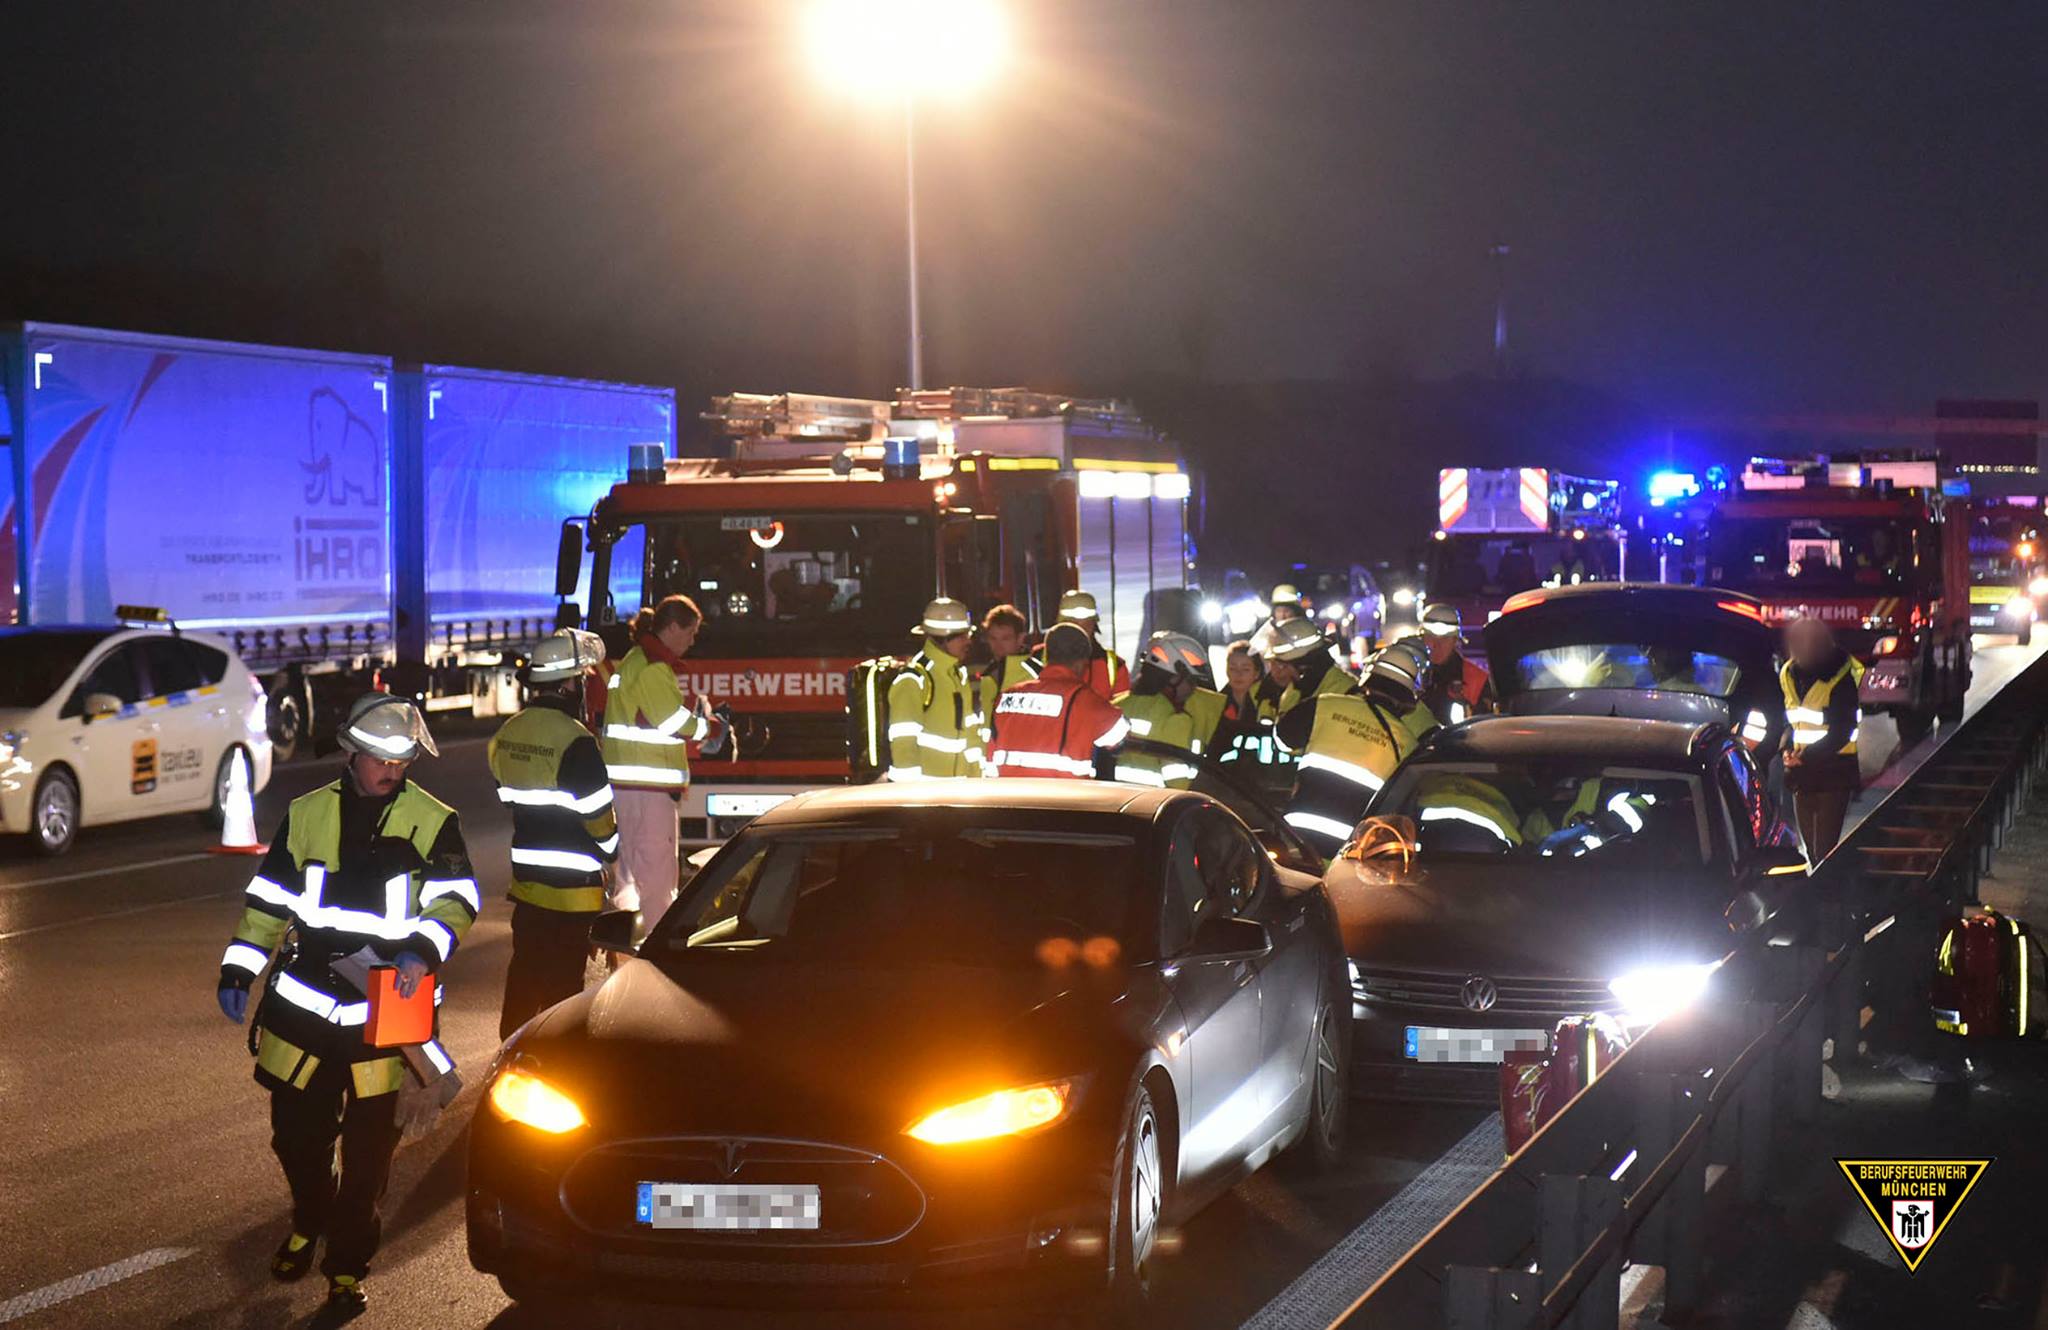 München: Πραγματικός ήρωας! Οδηγός ακινητοποίησε άλλο αυτοκίνητο με το αυτοκίνητό του